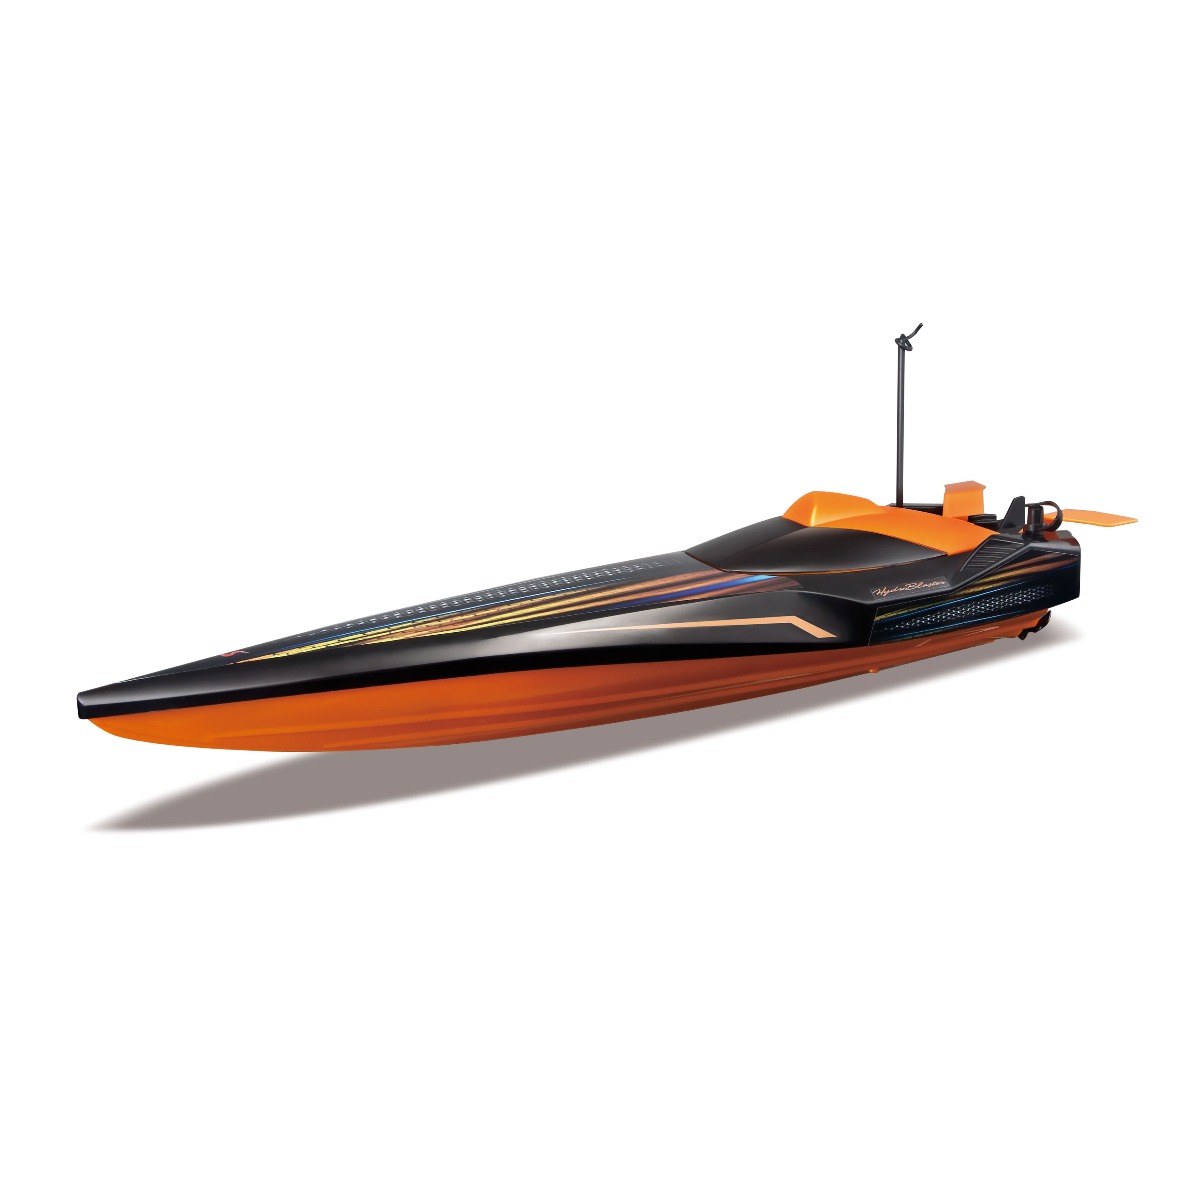 Barca cu telecomanda Maisto Tech Hydroblaster Speed, Negru/Portocaliu Barca